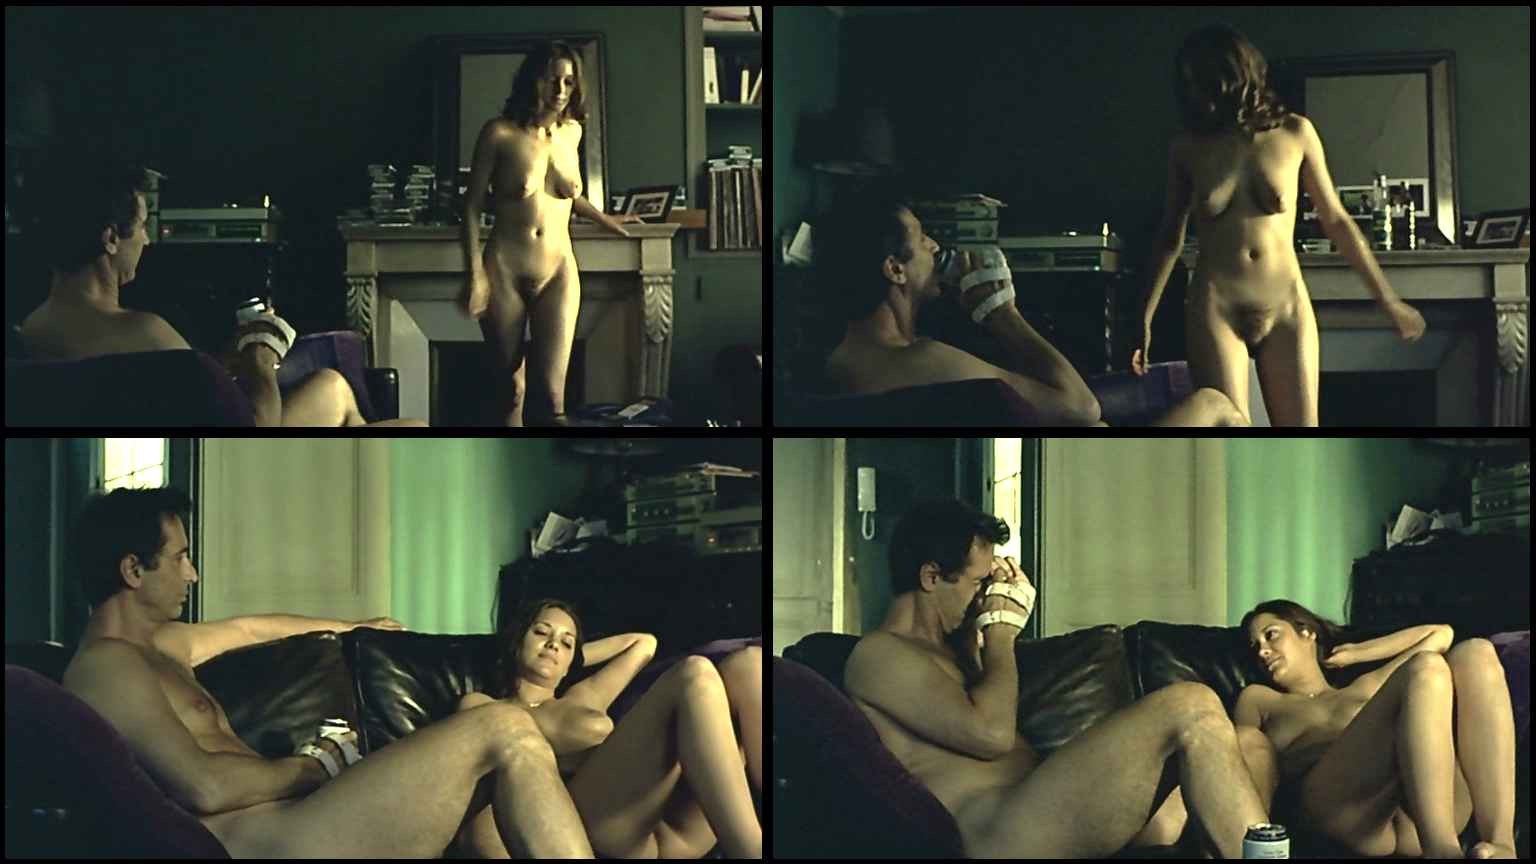 Марион котийяр горячие голая в порно (84 фото) - порно и фото голых на  pornokran.cc